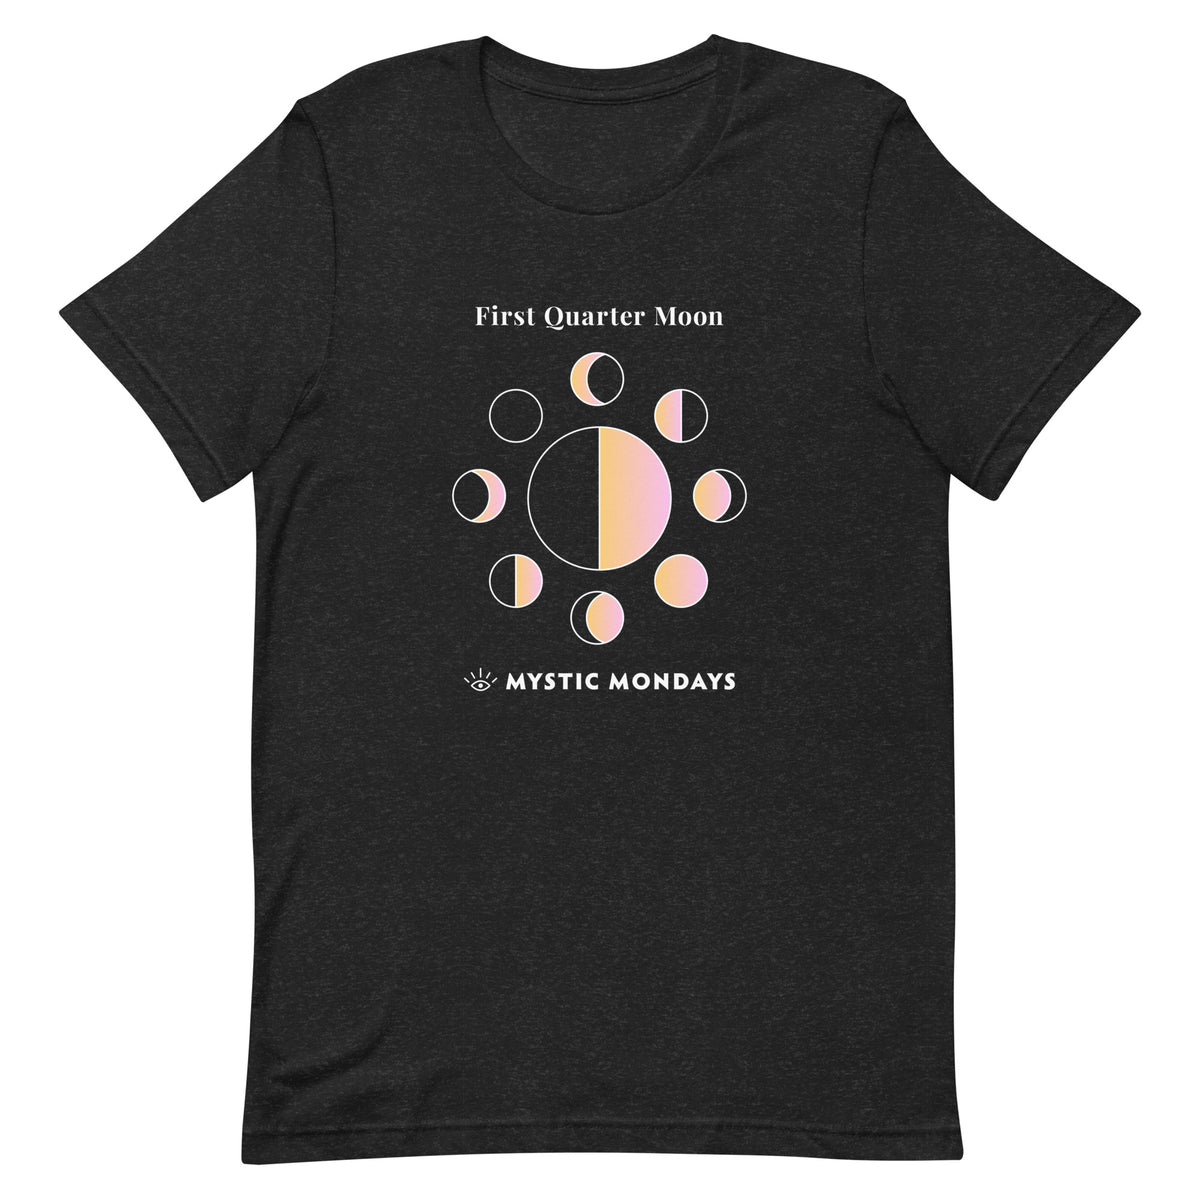 First Quarter Moon T-shirt